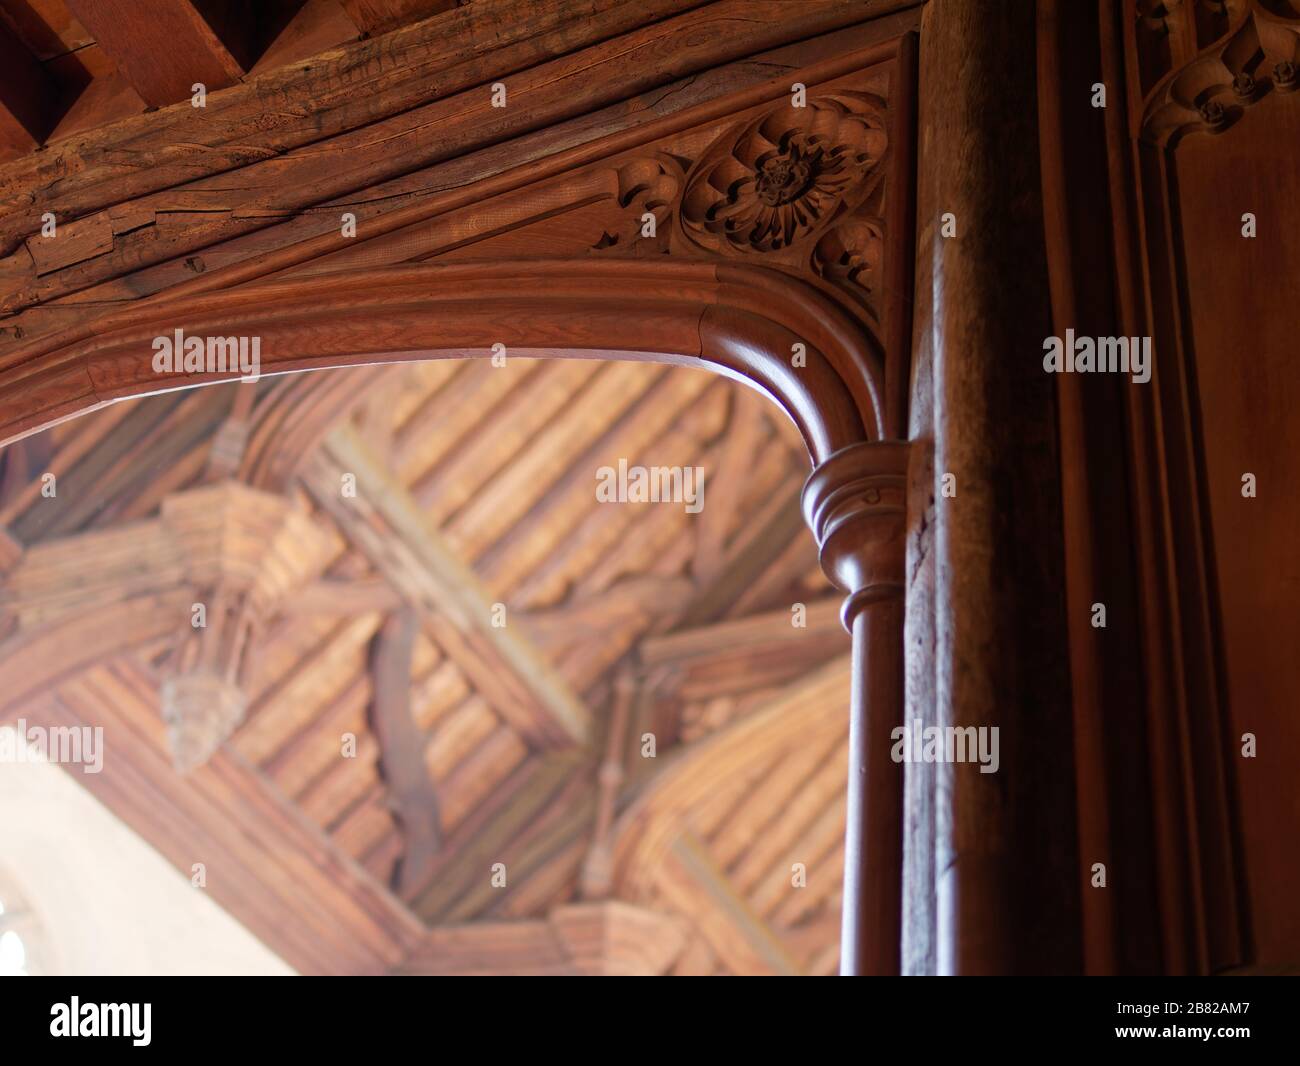 Detail aus dekorativem Holzspandel in der Großen Halle, Eltham Palace. Hammerbeam Dach im Hintergrund. Stockfoto